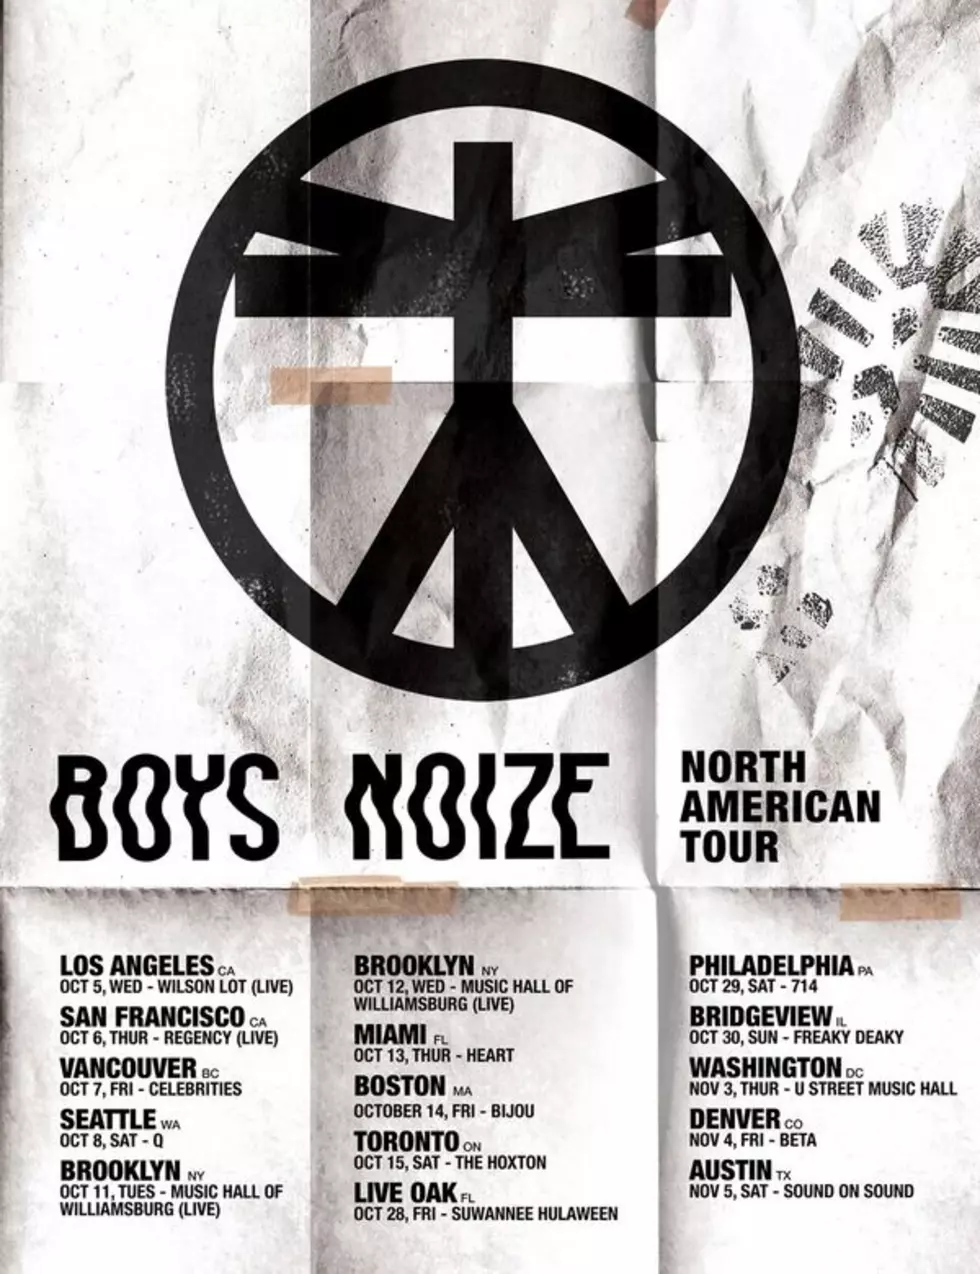 BOYS NOIZE NORTH AMERICAN TOUR STARTS TOMORROW 10.5 IN LA